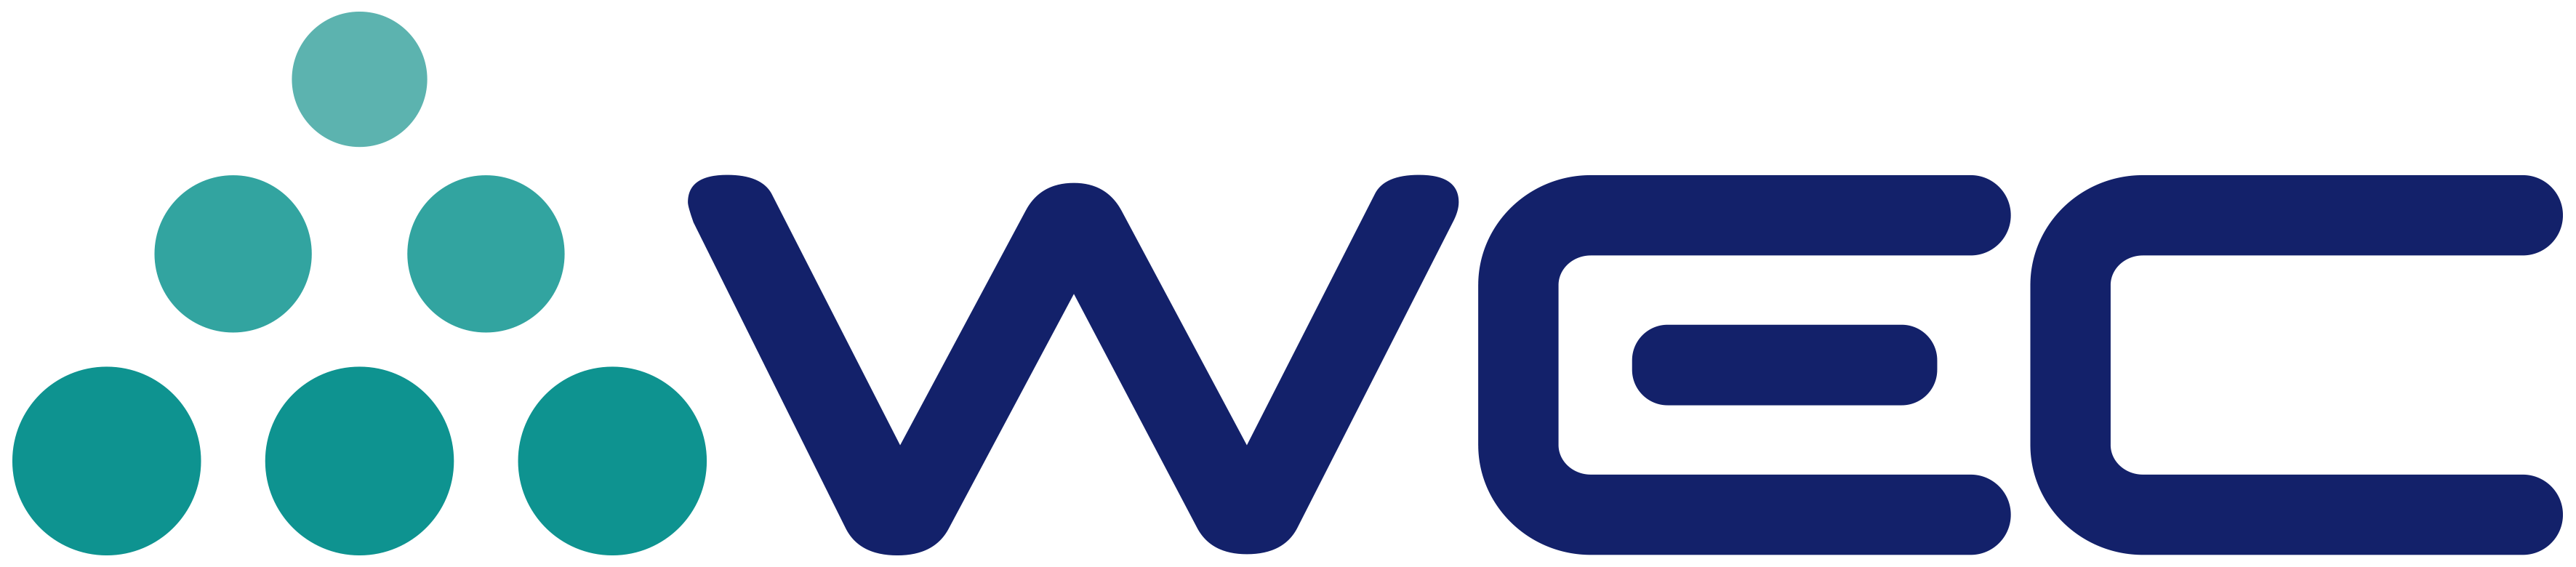 Wec Engineers & Constructors Pte Ltd logo